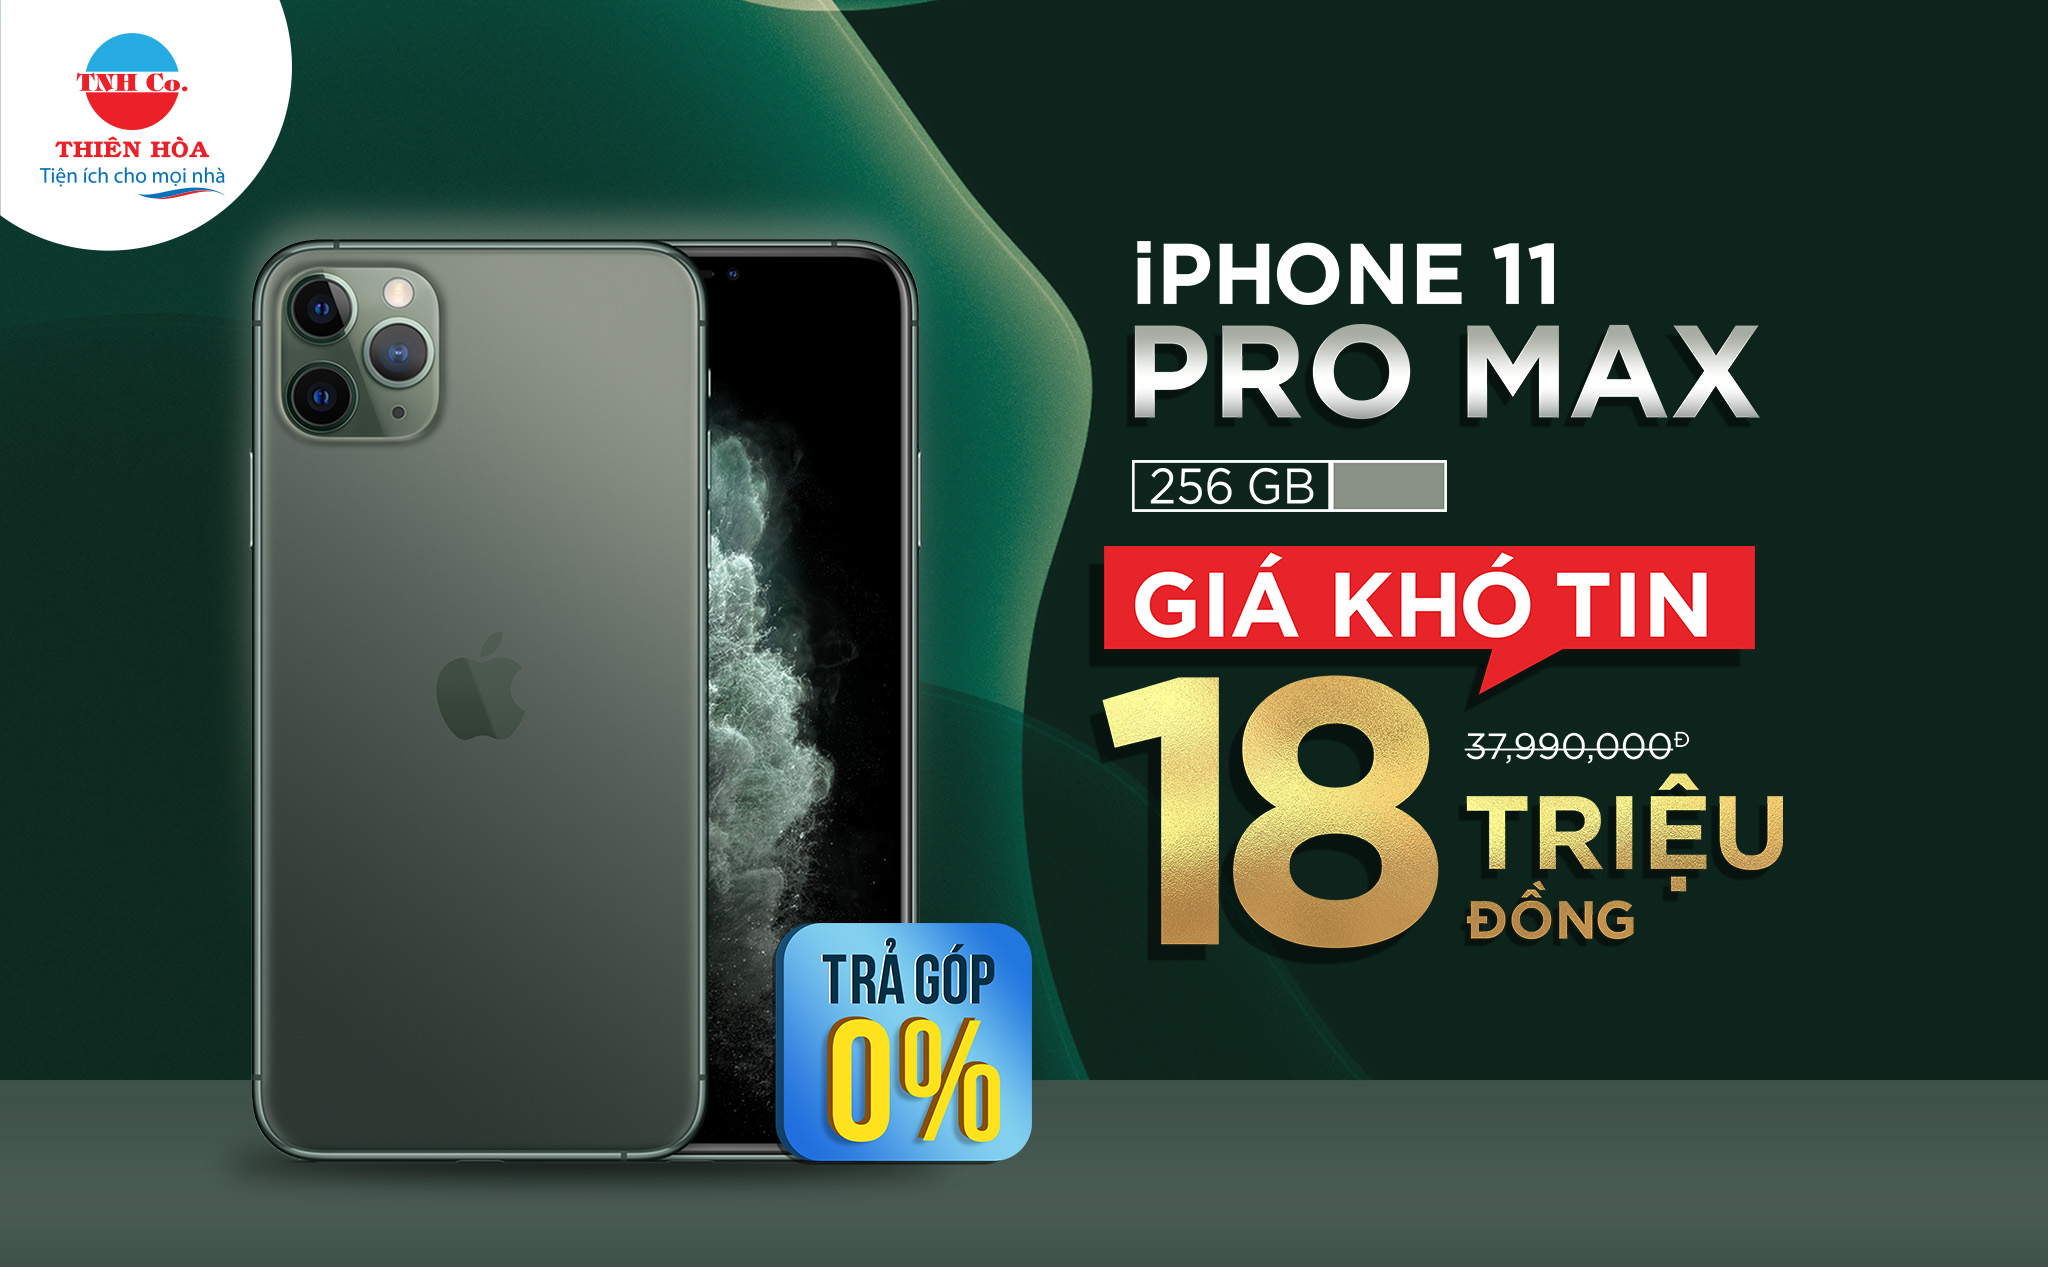 [QC] Mua iPhone 11 Pro Max giá 18 triệu đồng tại Thiên Hoà